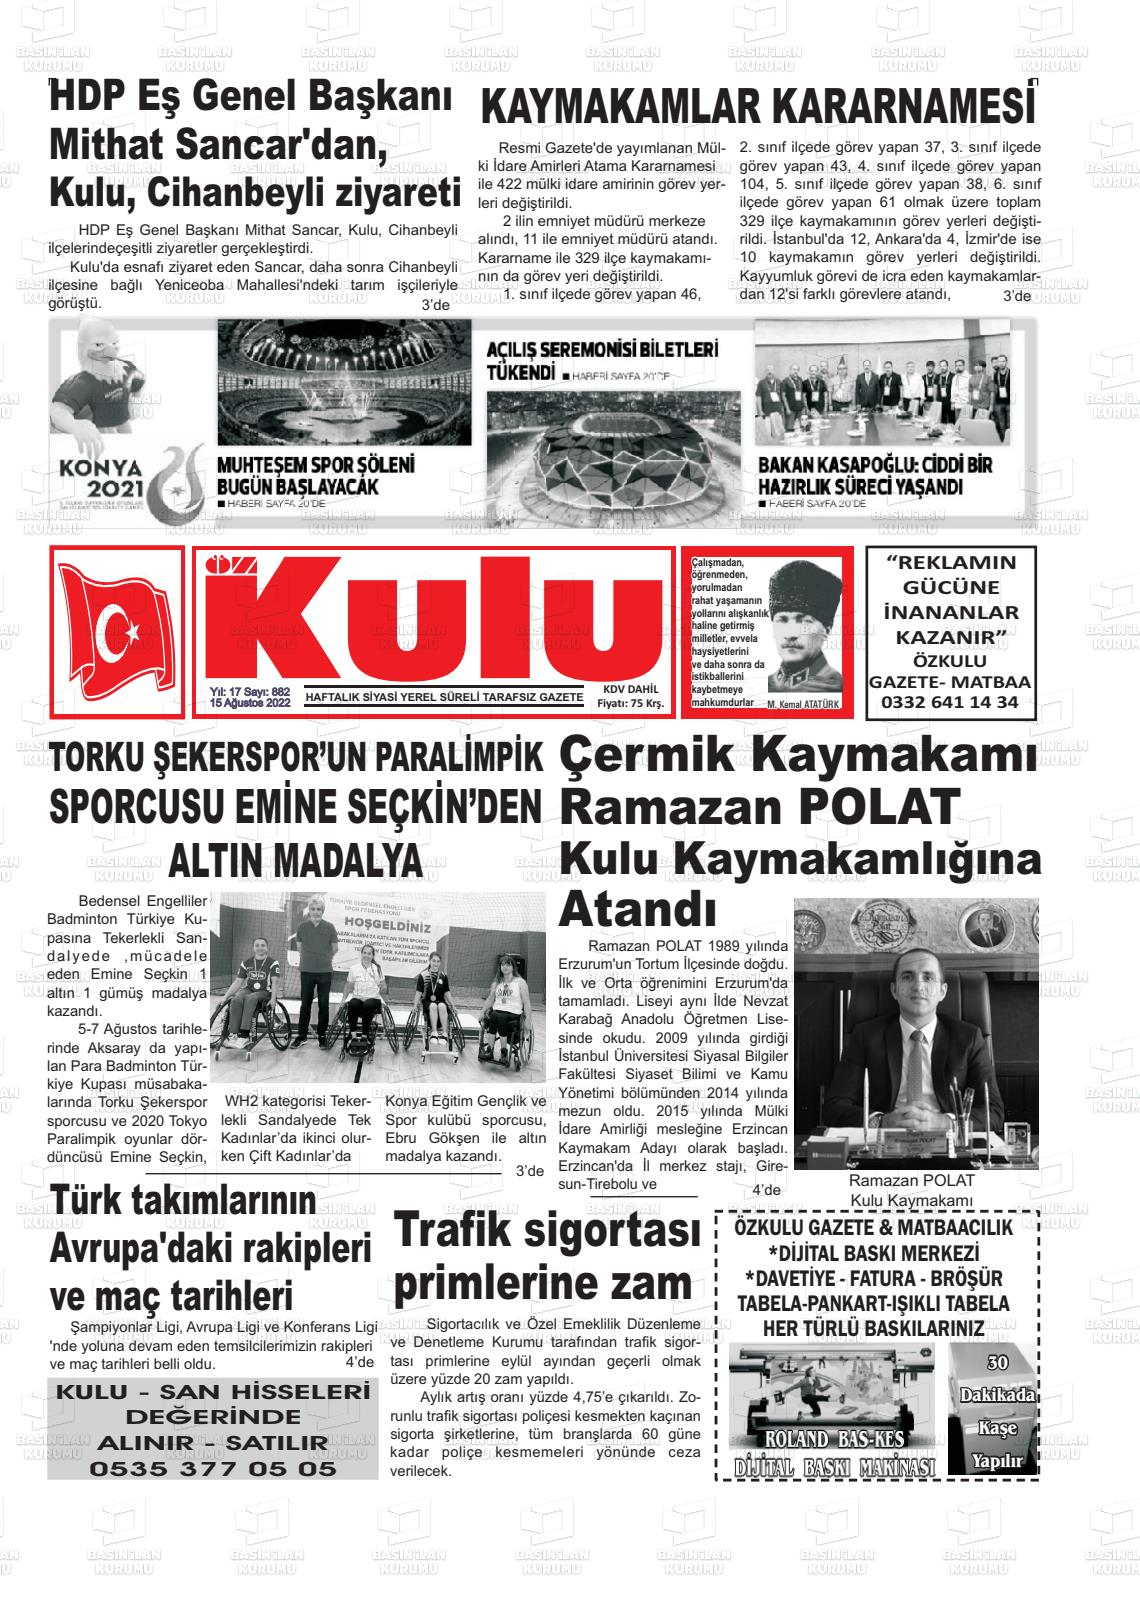 15 Ağustos 2022 Öz Kulu Gazete Manşeti